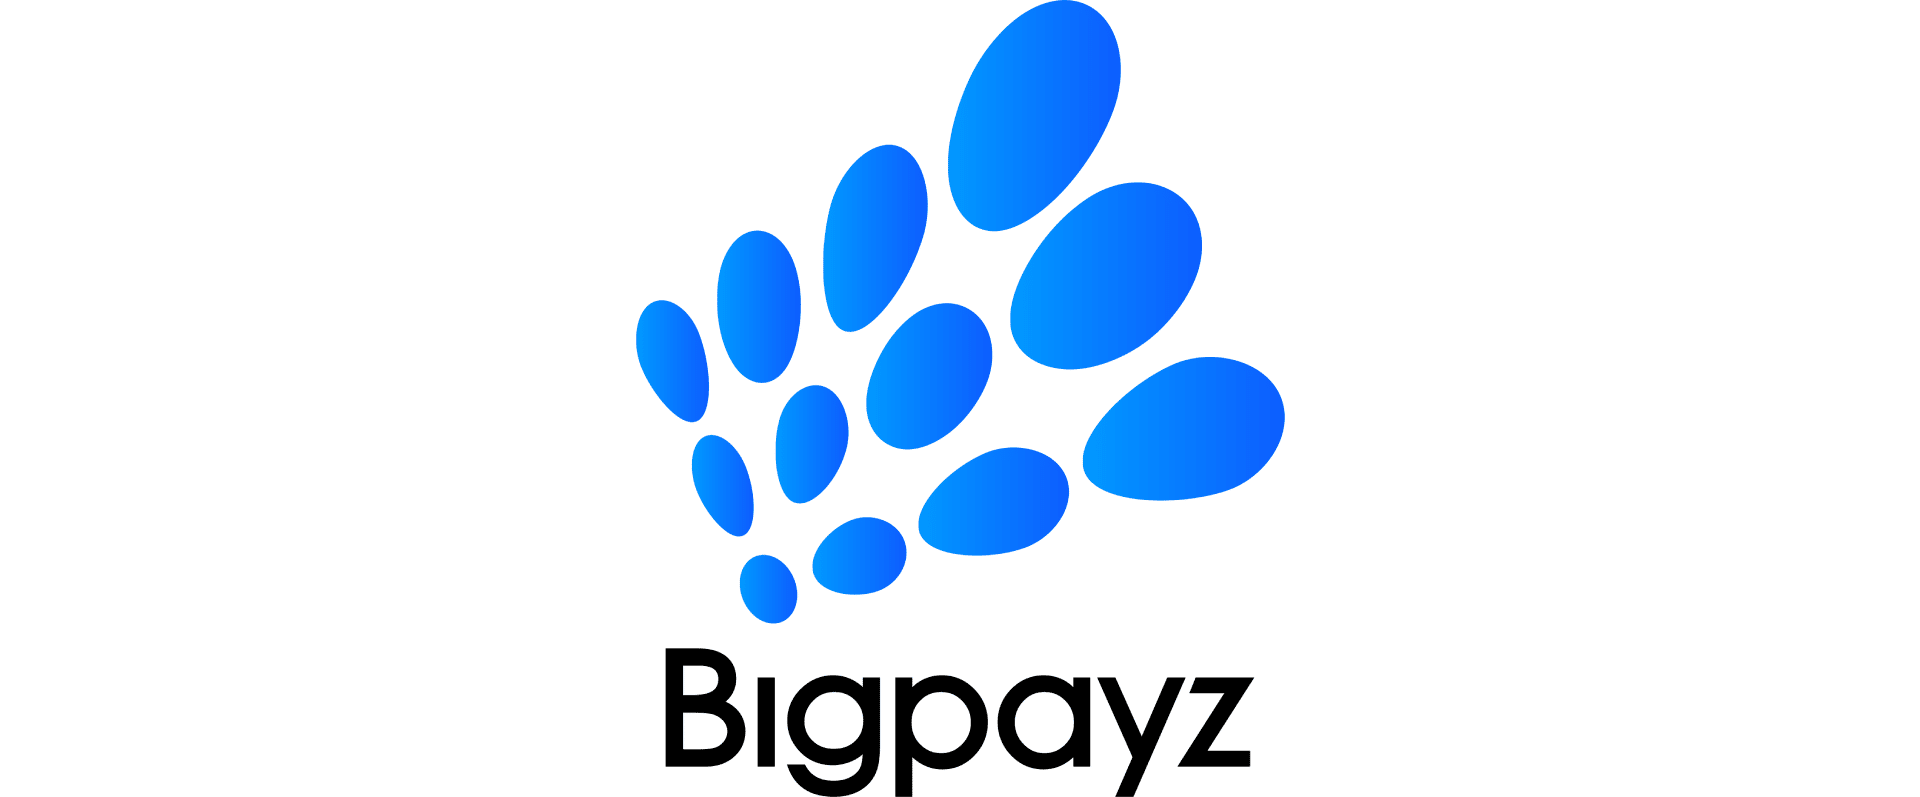 Bigpayz